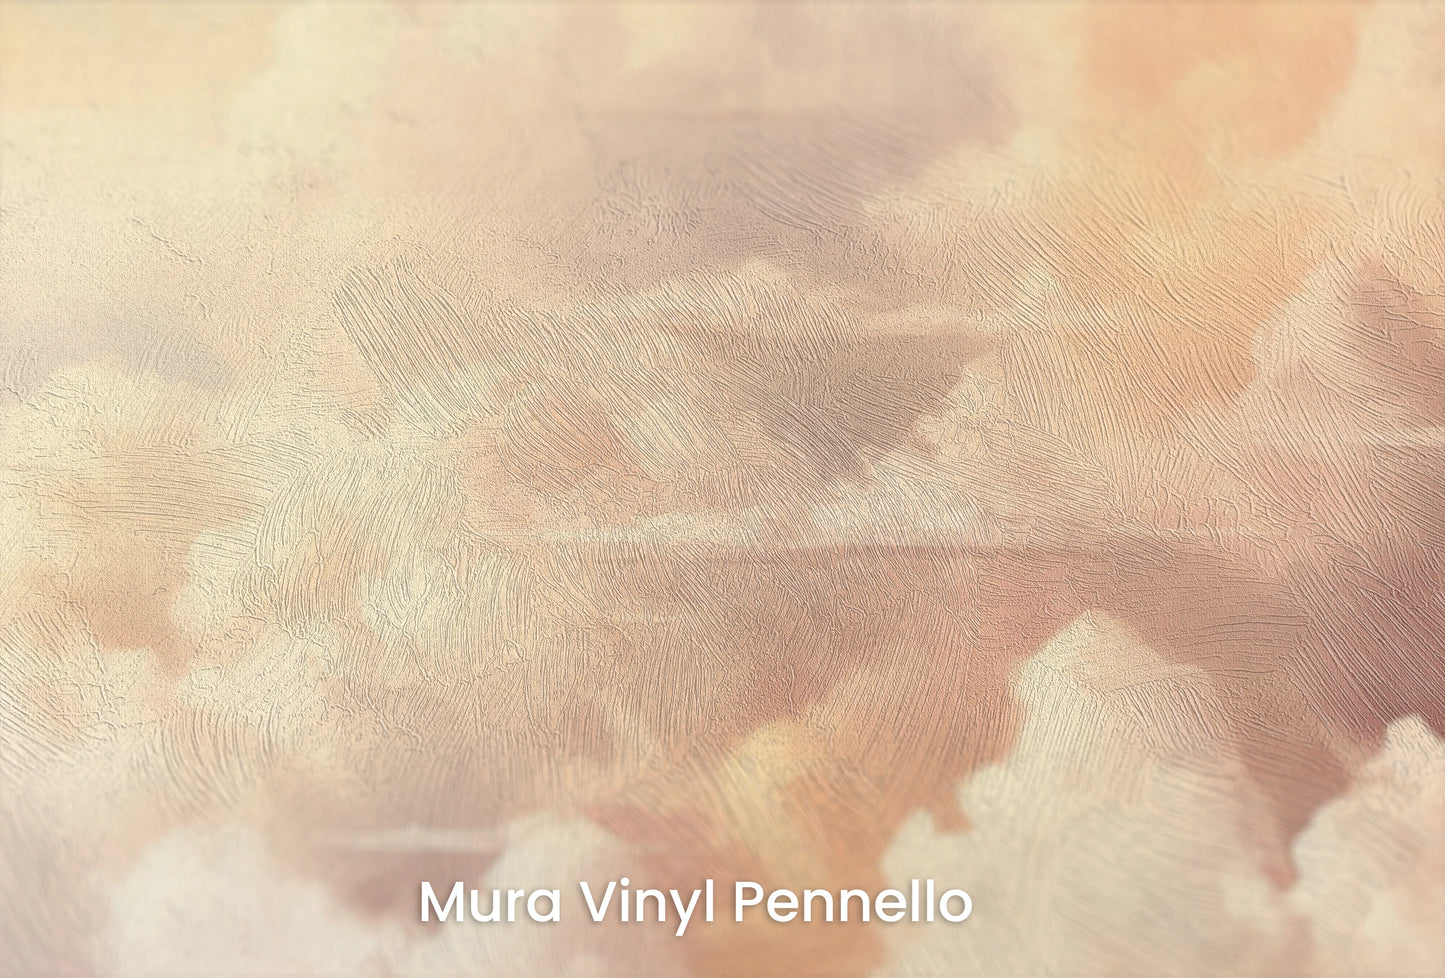 Zbliżenie na artystyczną fototapetę o nazwie Morning's Warmth na podłożu Mura Vinyl Pennello - faktura pociągnięć pędzla malarskiego.